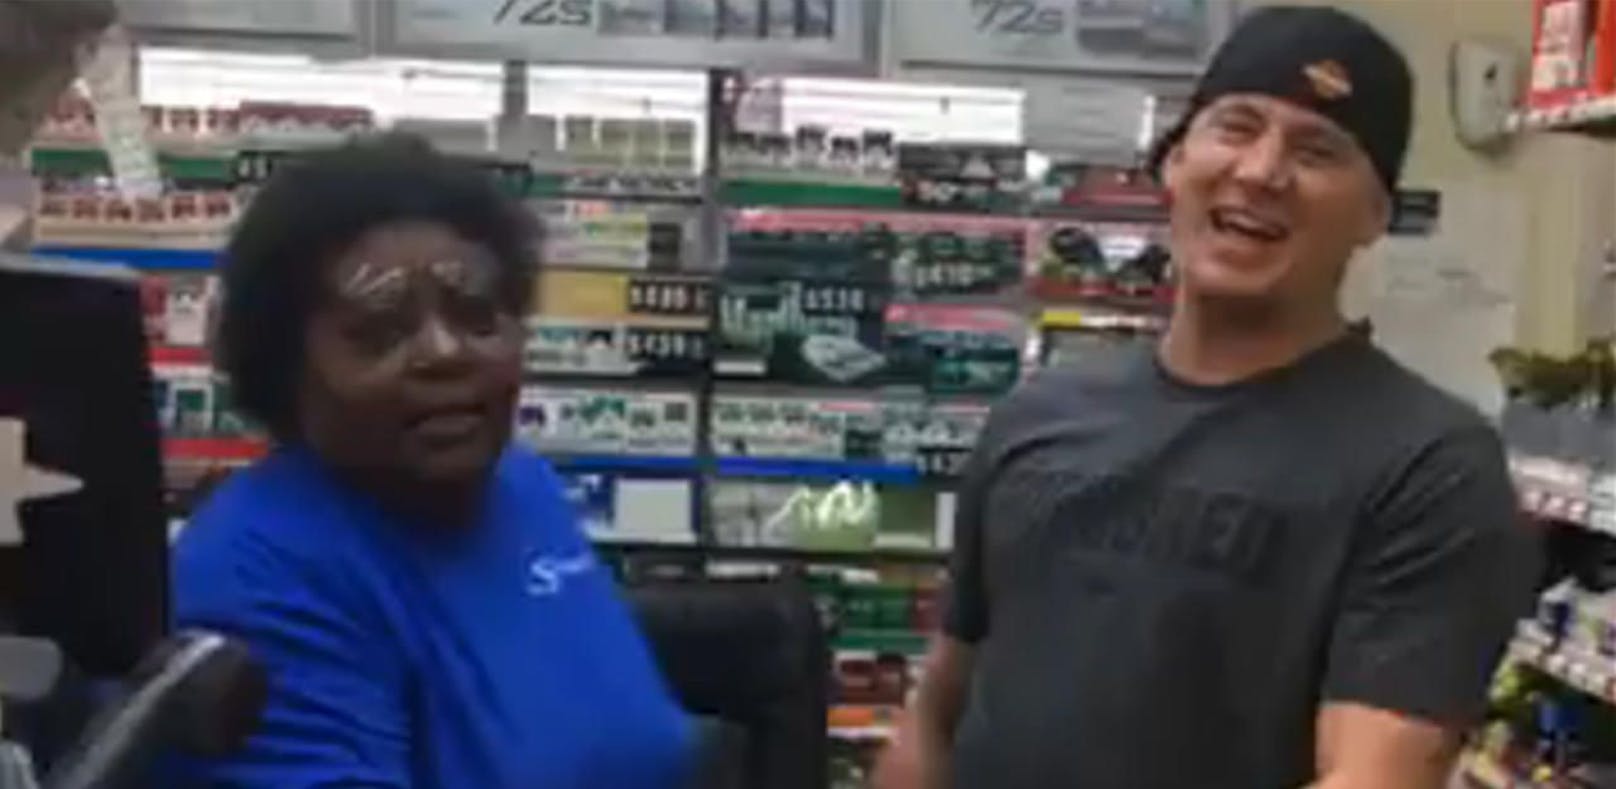 Magic Mike tanzt mit Supermarkt-Kassiererin